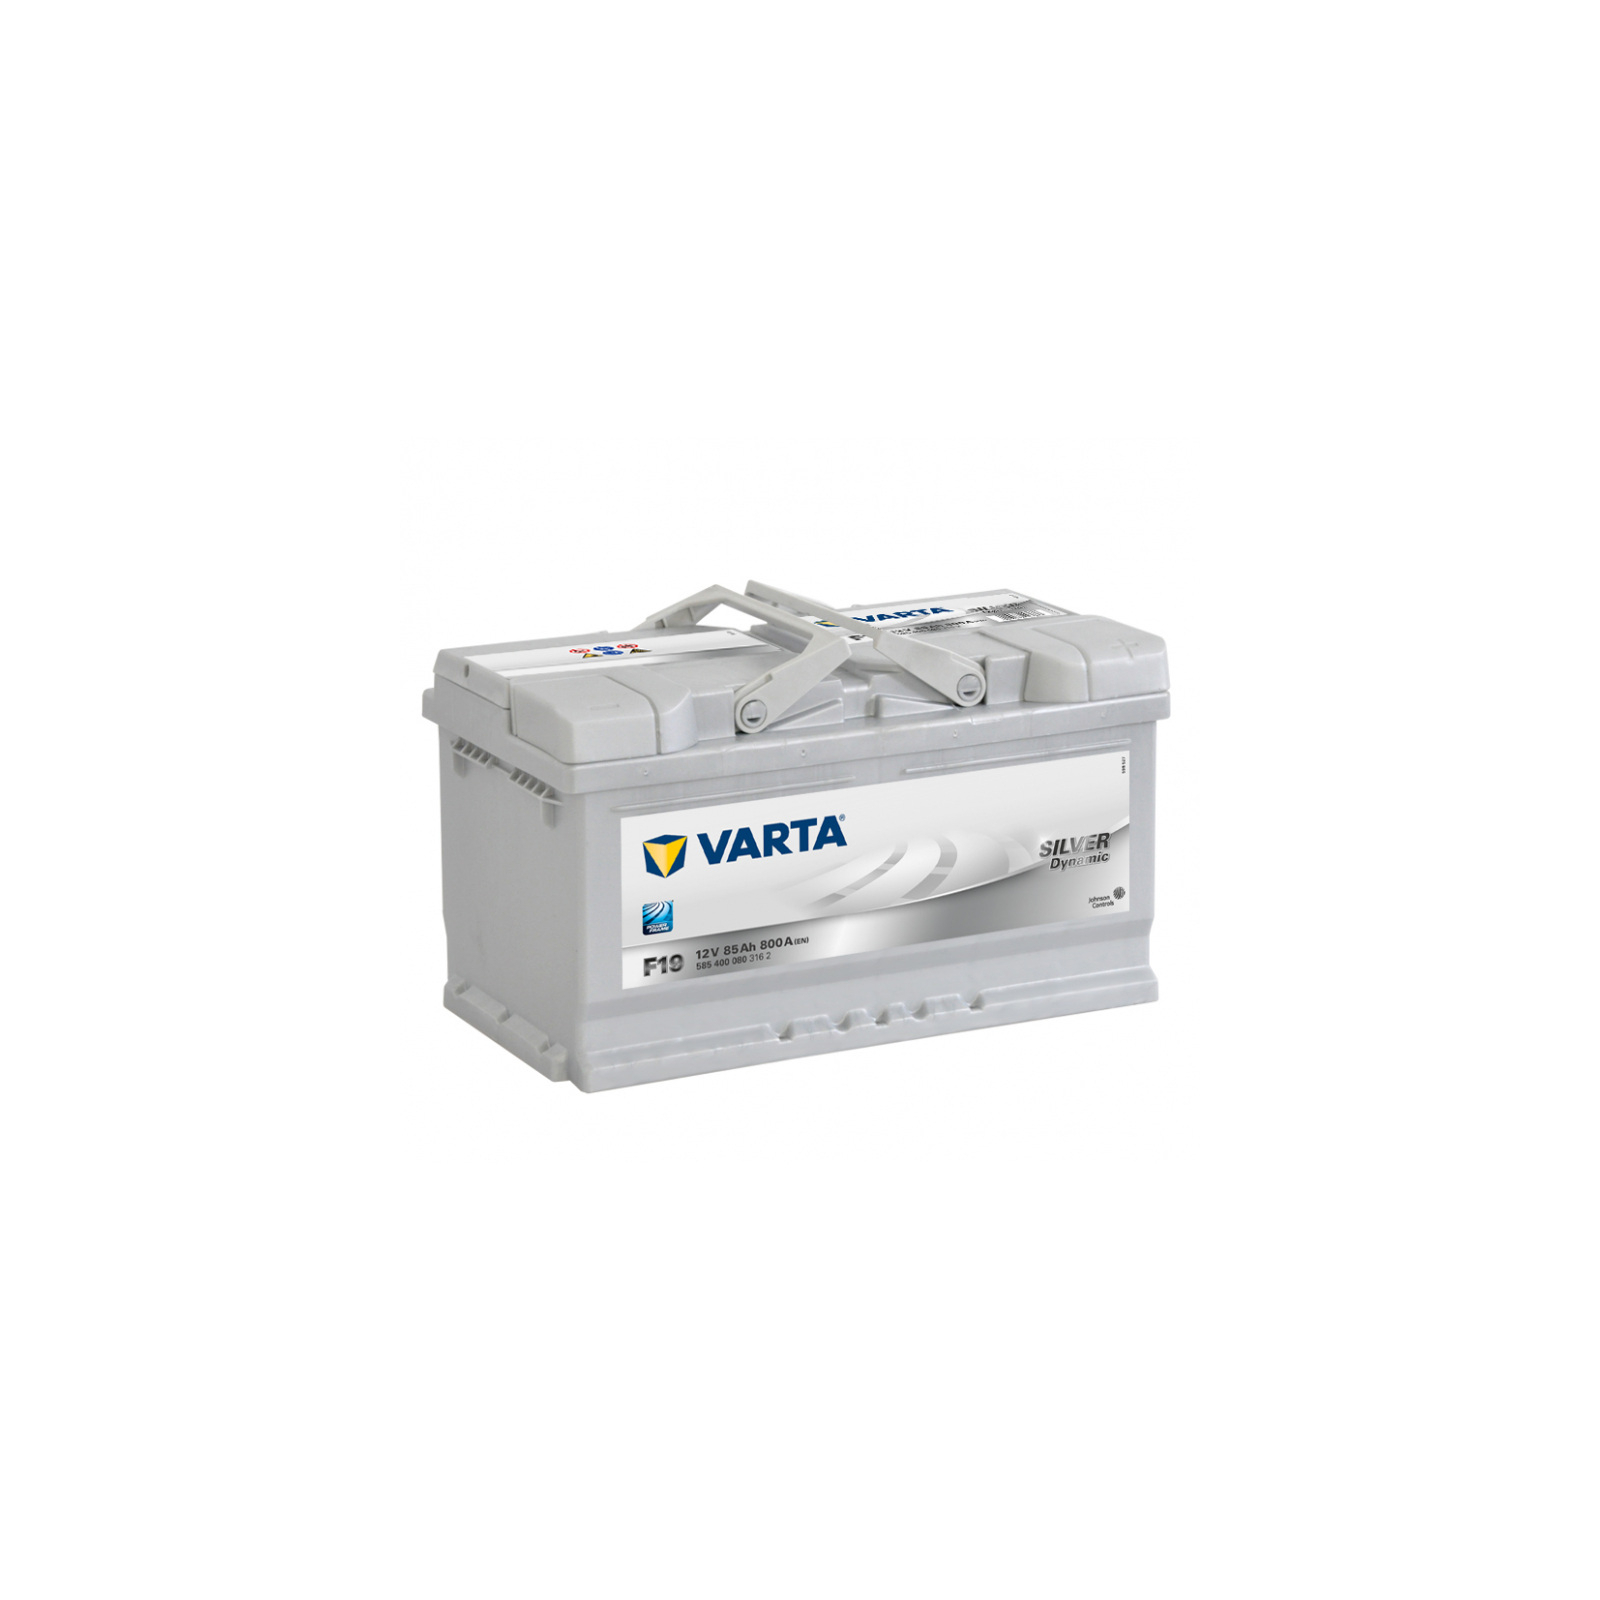 Акумулятор автомобільний Varta Silver Dynamic 85Ah (585400080)